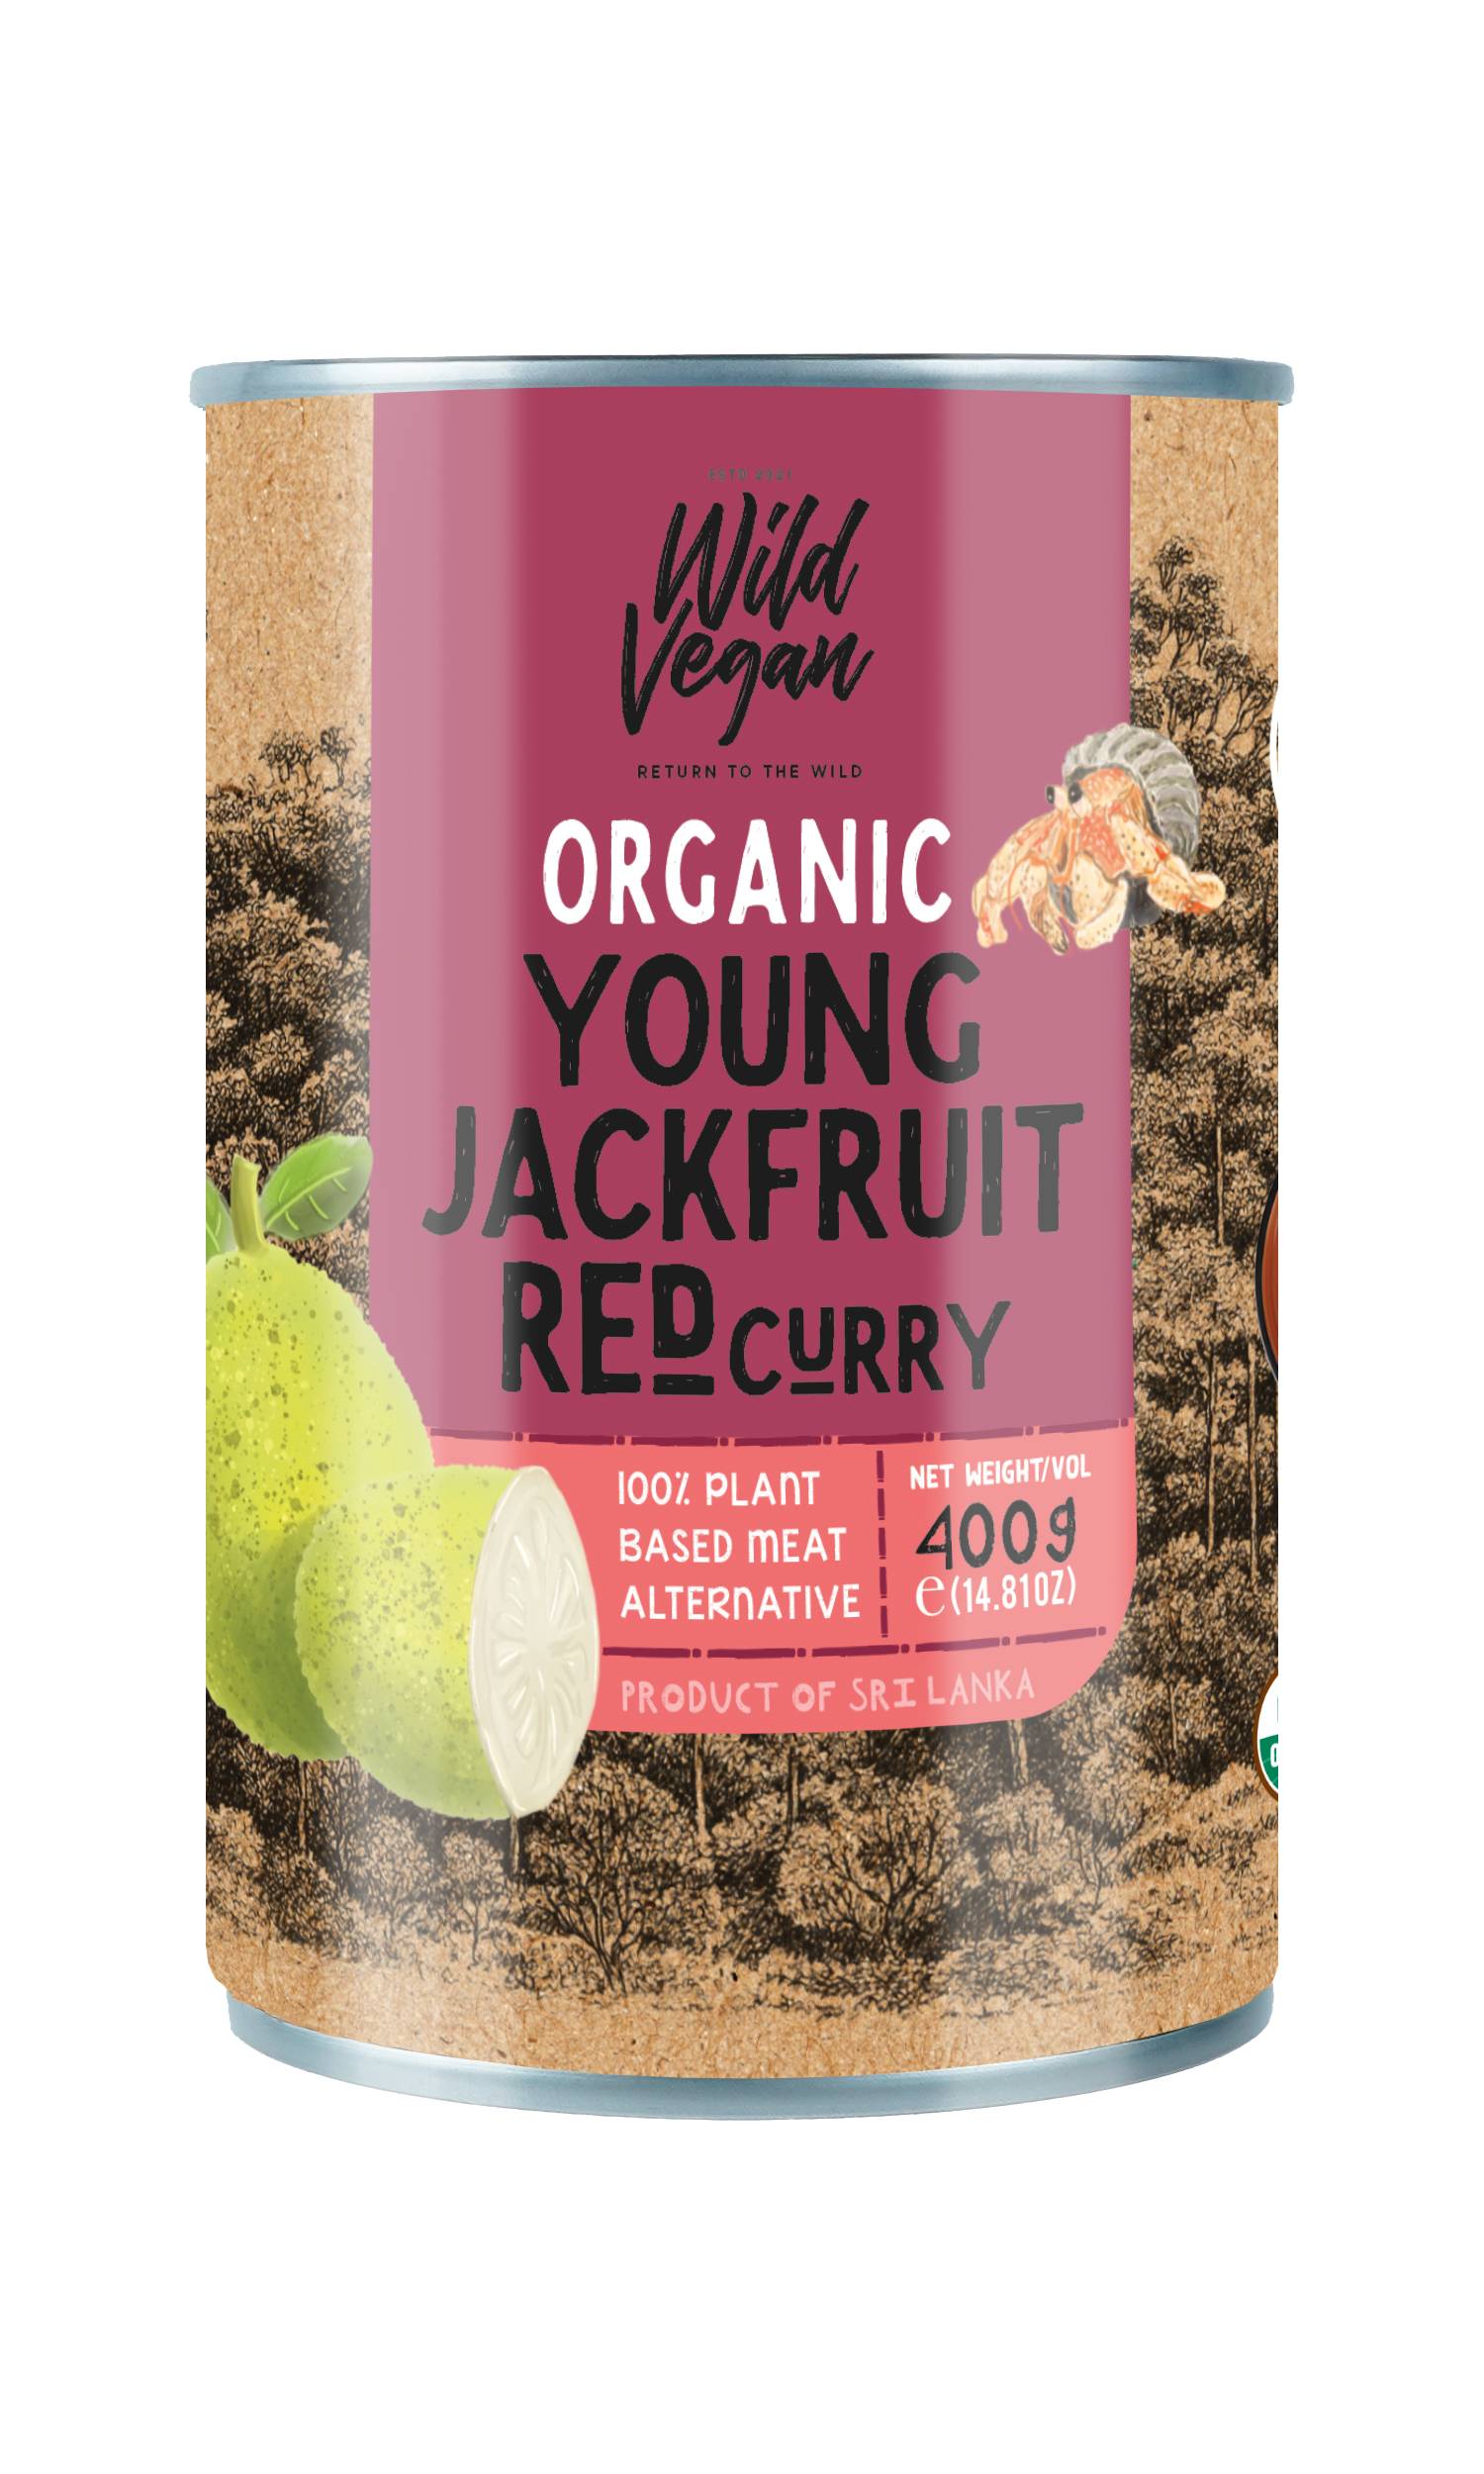 wild vegan Organic YoungJackfruit Red curry